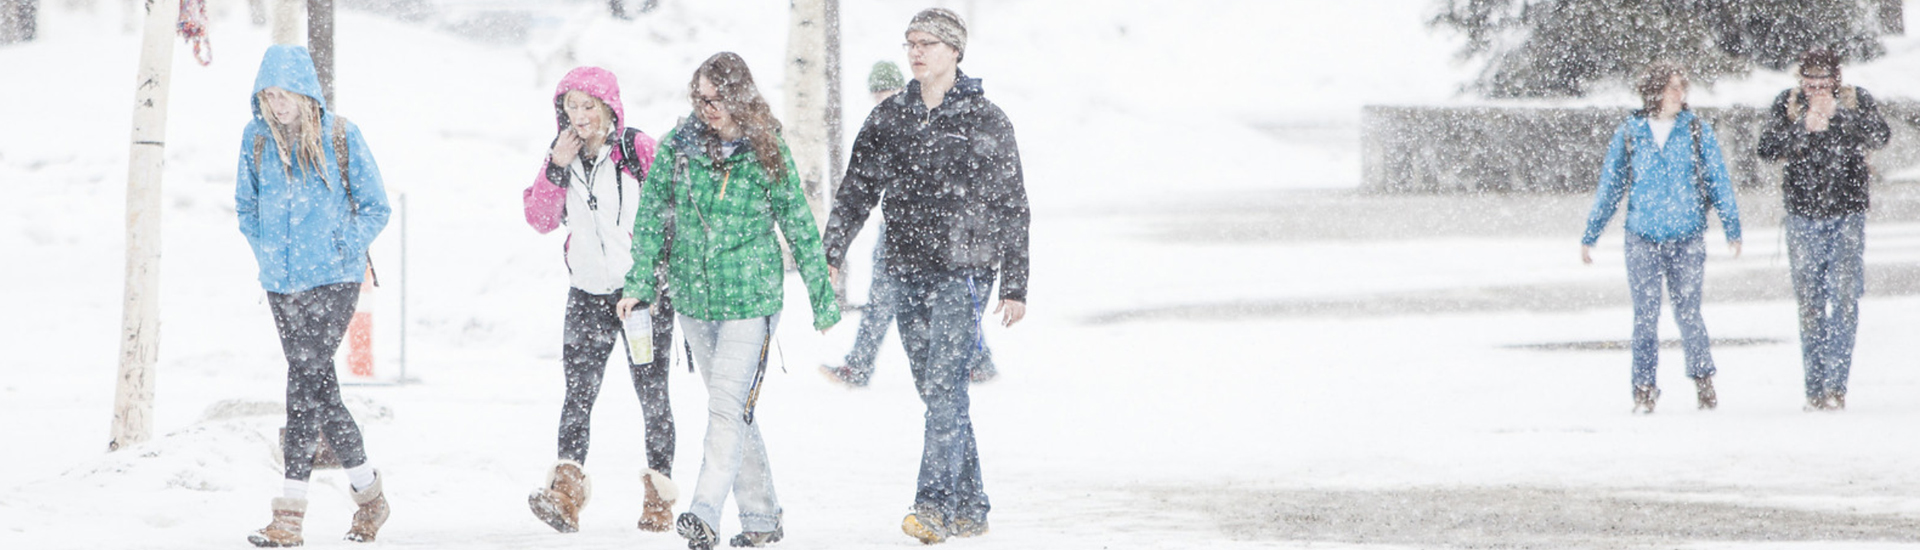 people walking in snowstorm